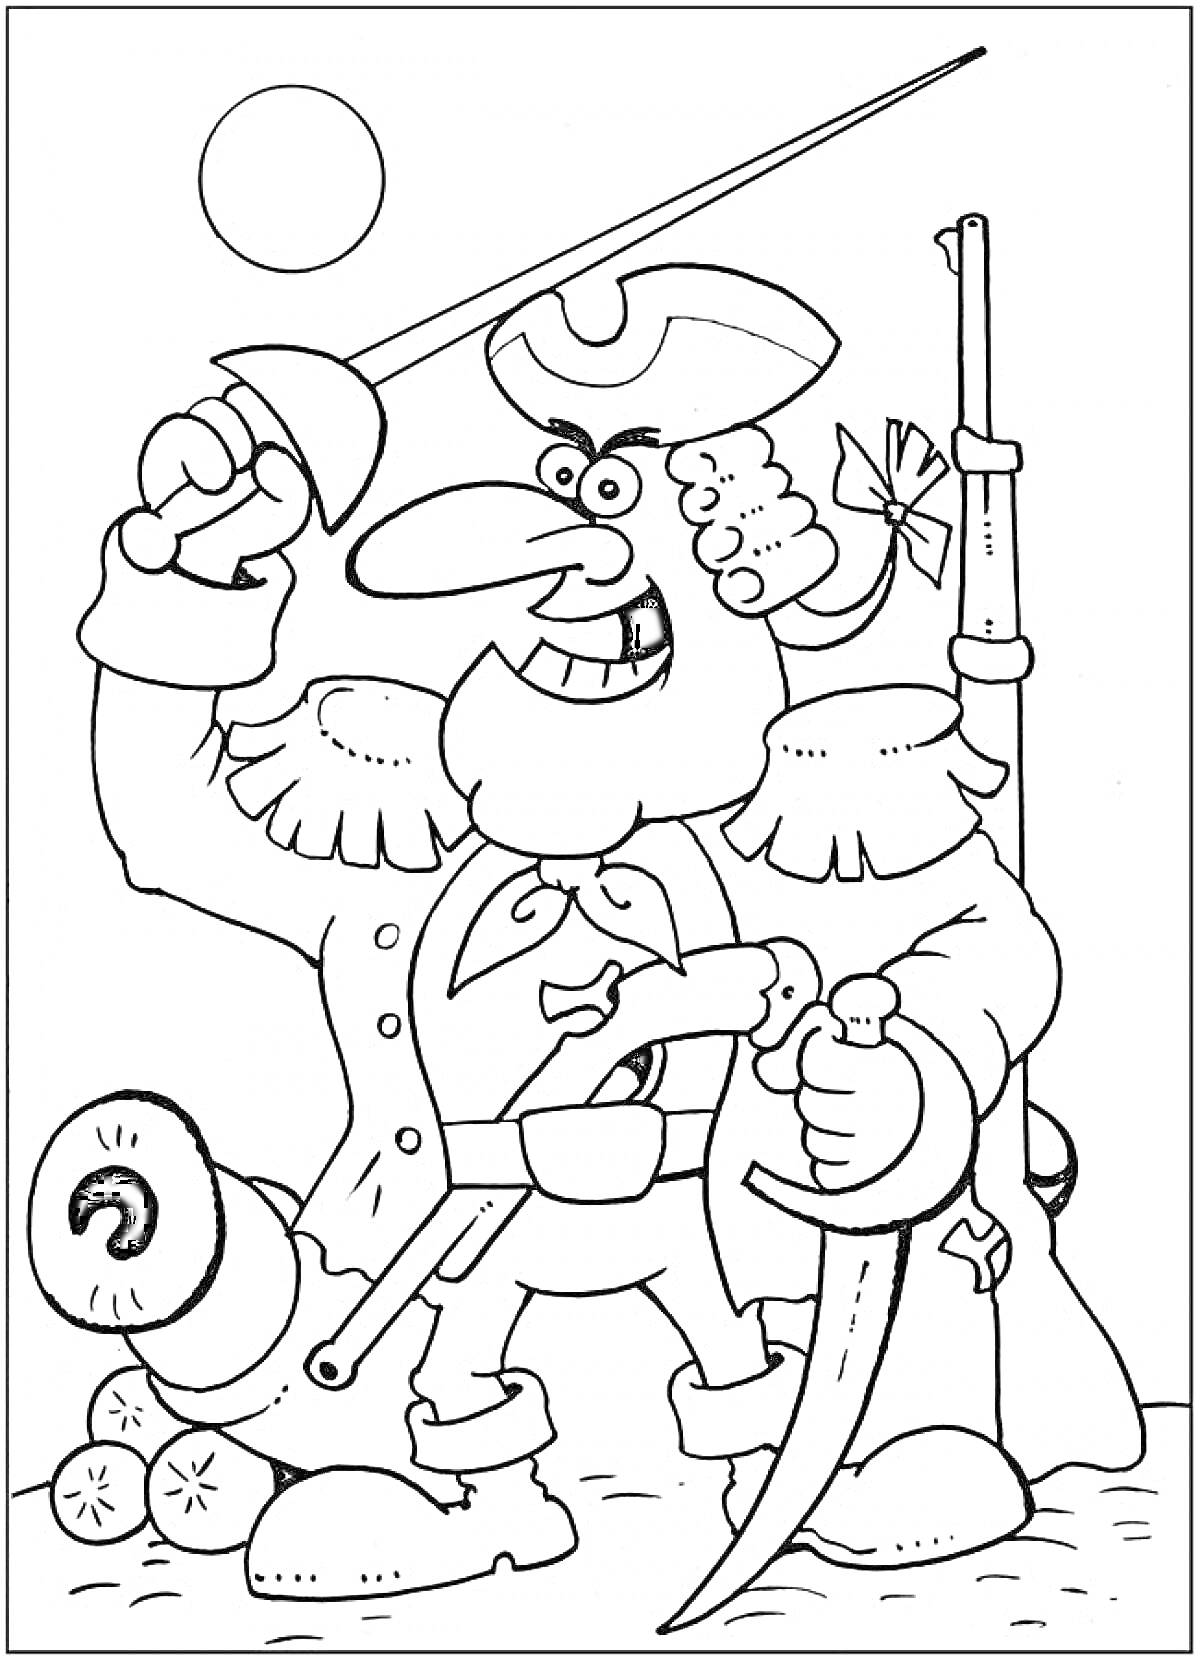 Раскраска Доктор Ливси в пиратской одежде с саблей и мушкетом